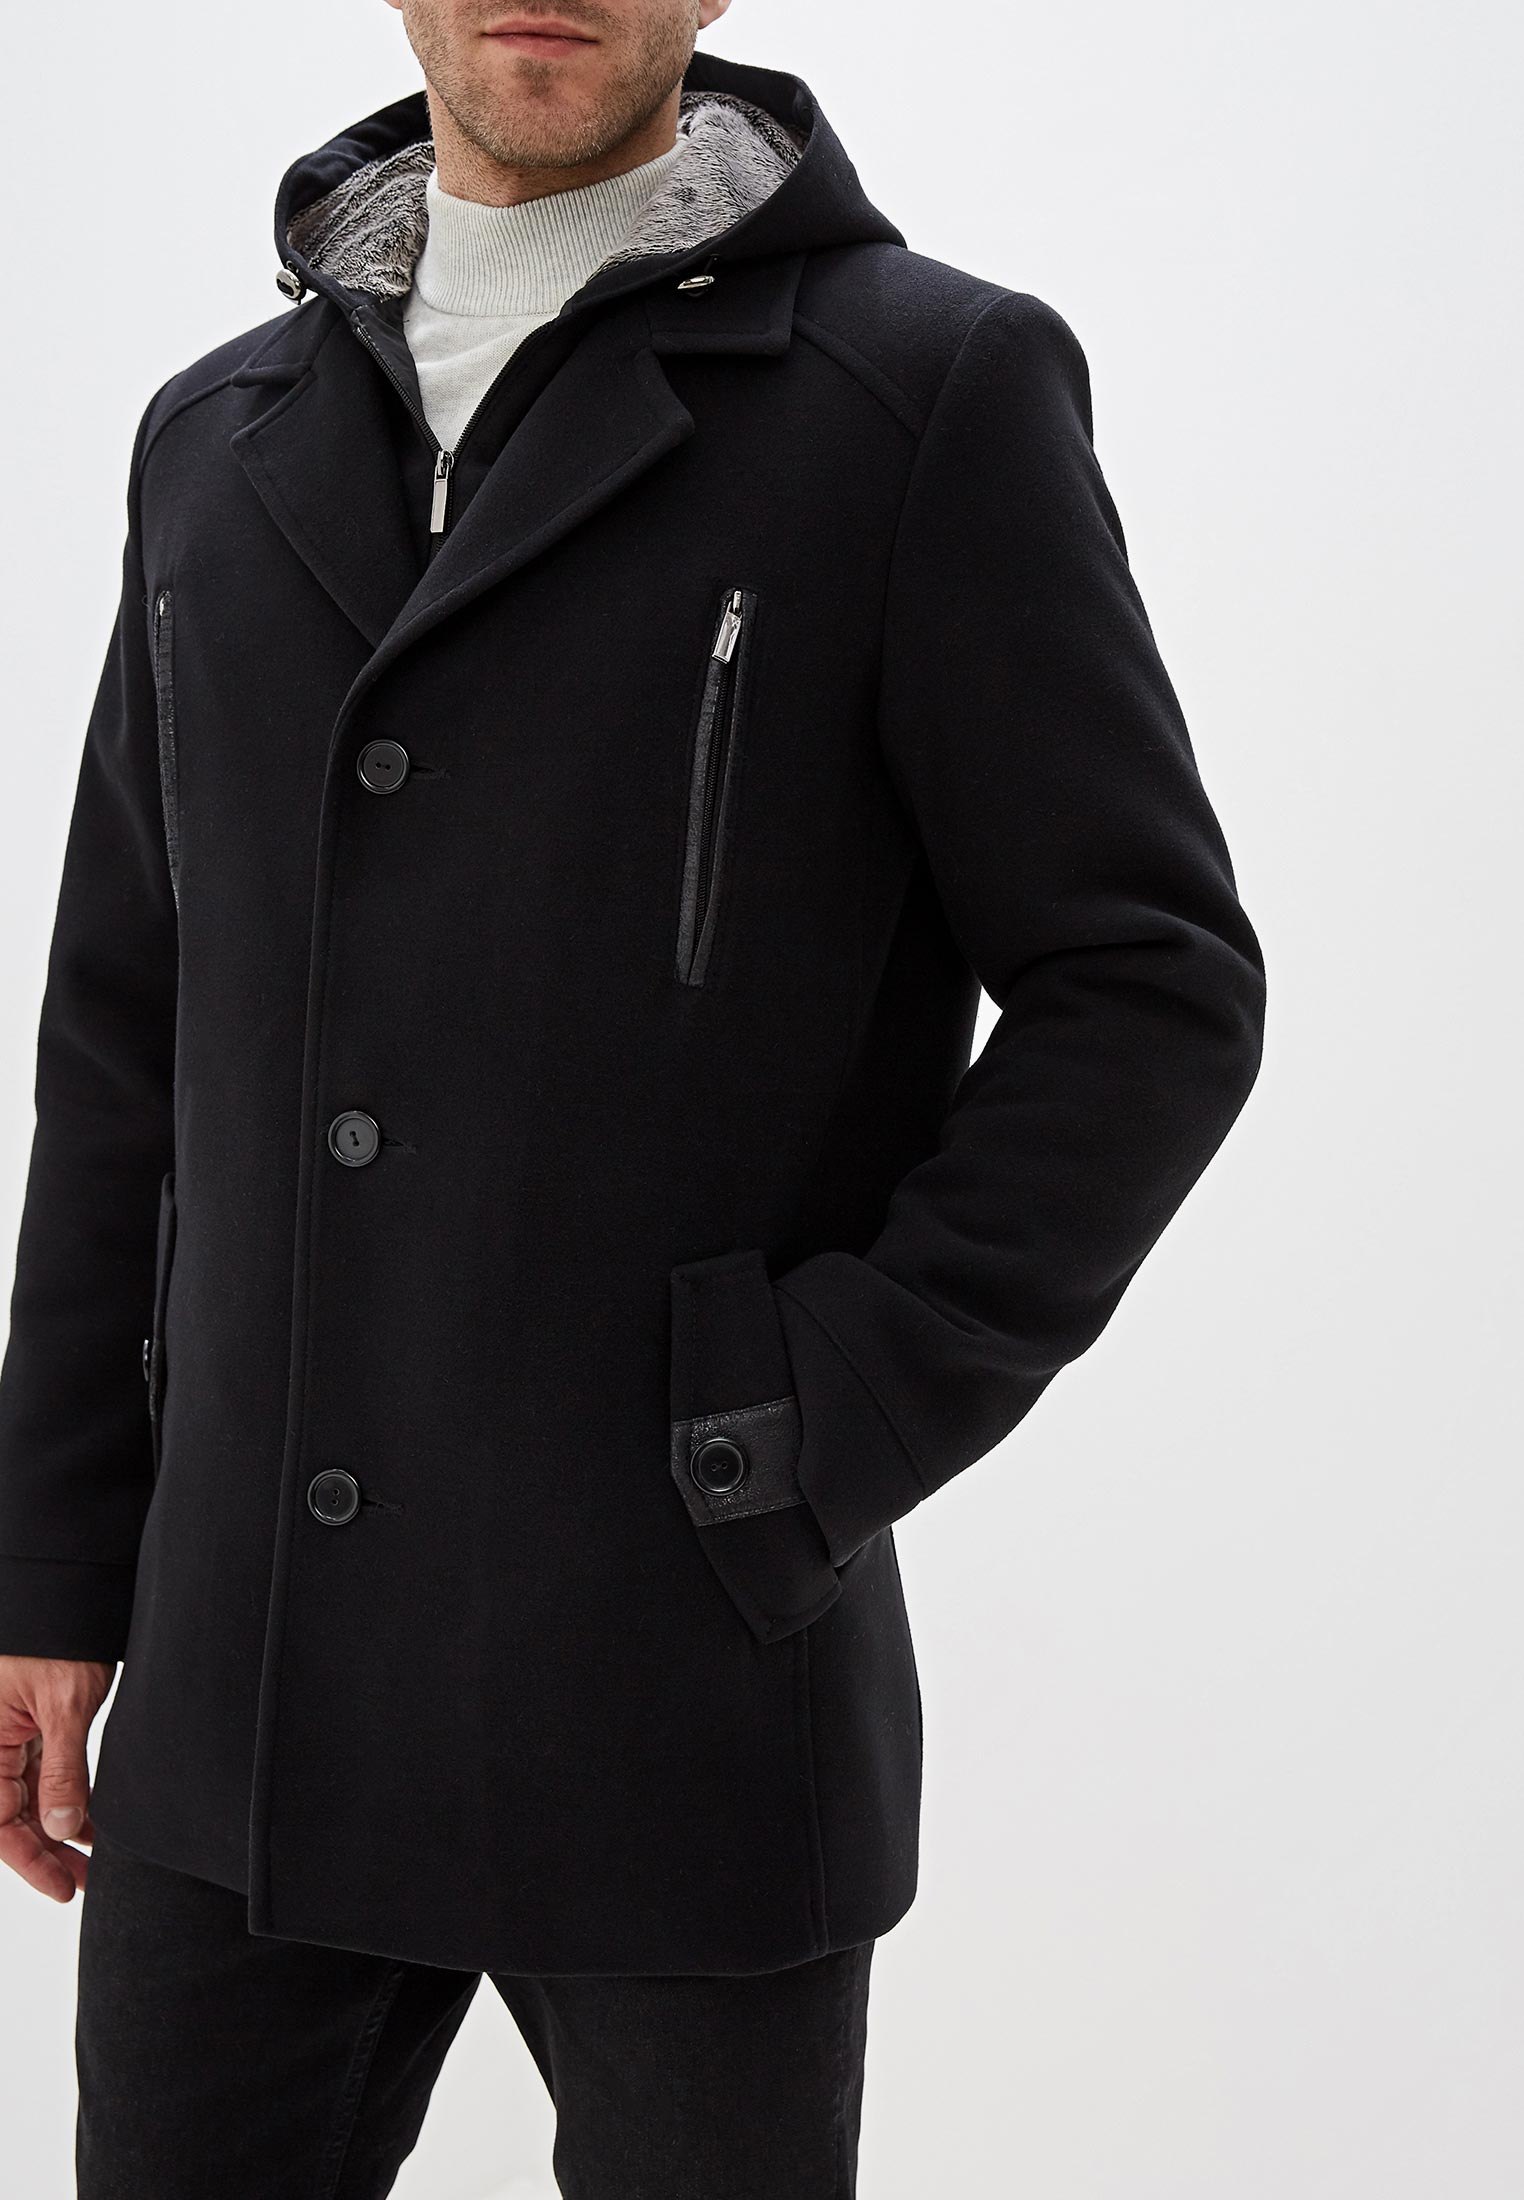 Купить черное пальто мужское. Пальто мужское зимнее. Полупальто мужское. Зимнее пальто мужское черное. Полупальто мужское зимнее.